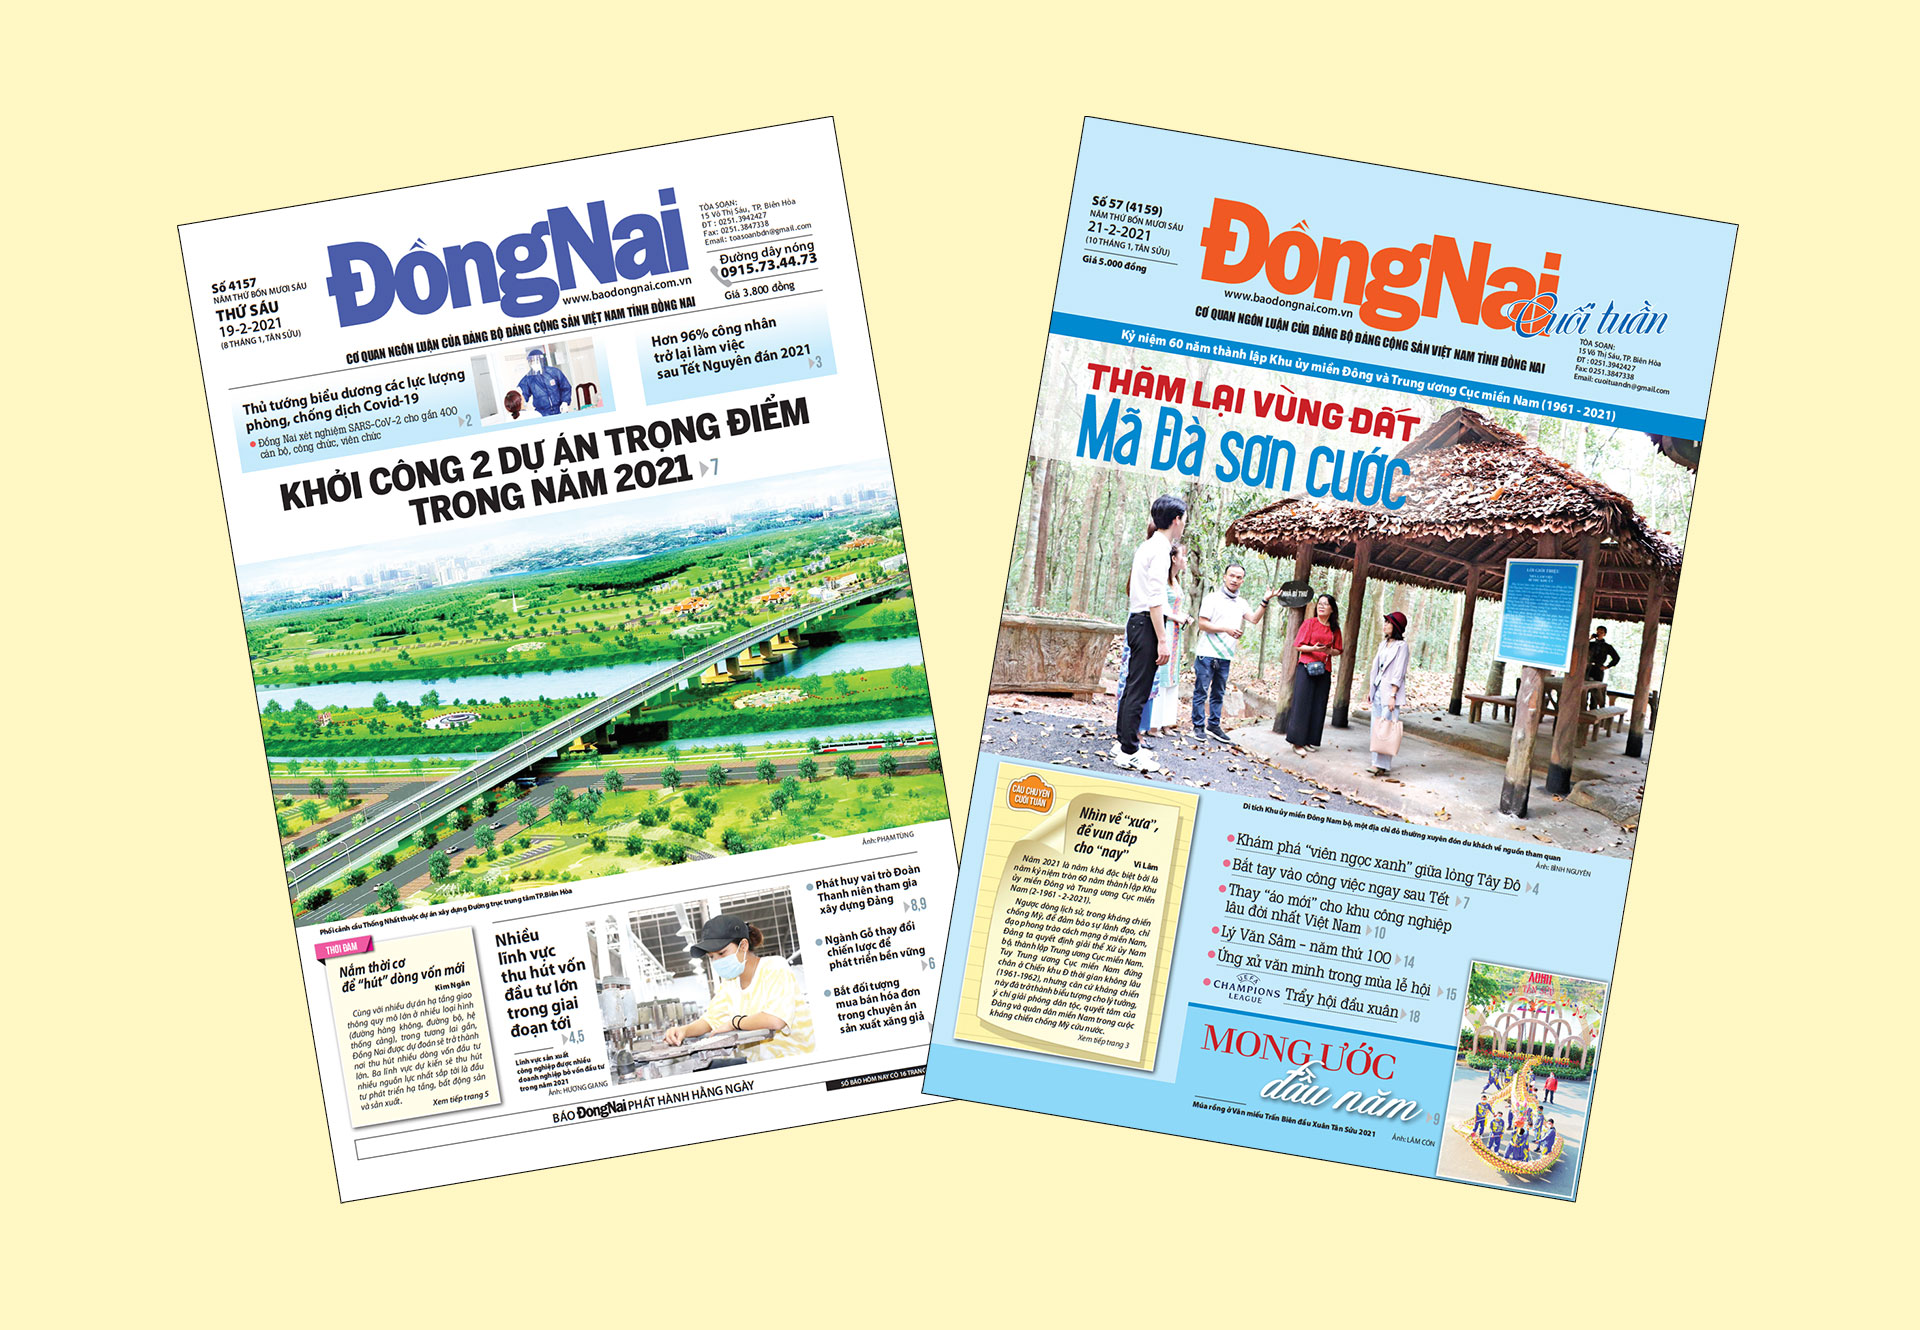 Bìa Báo Đồng Nai ra ngày 19-2 và Đồng Nai cuối tuần số 57